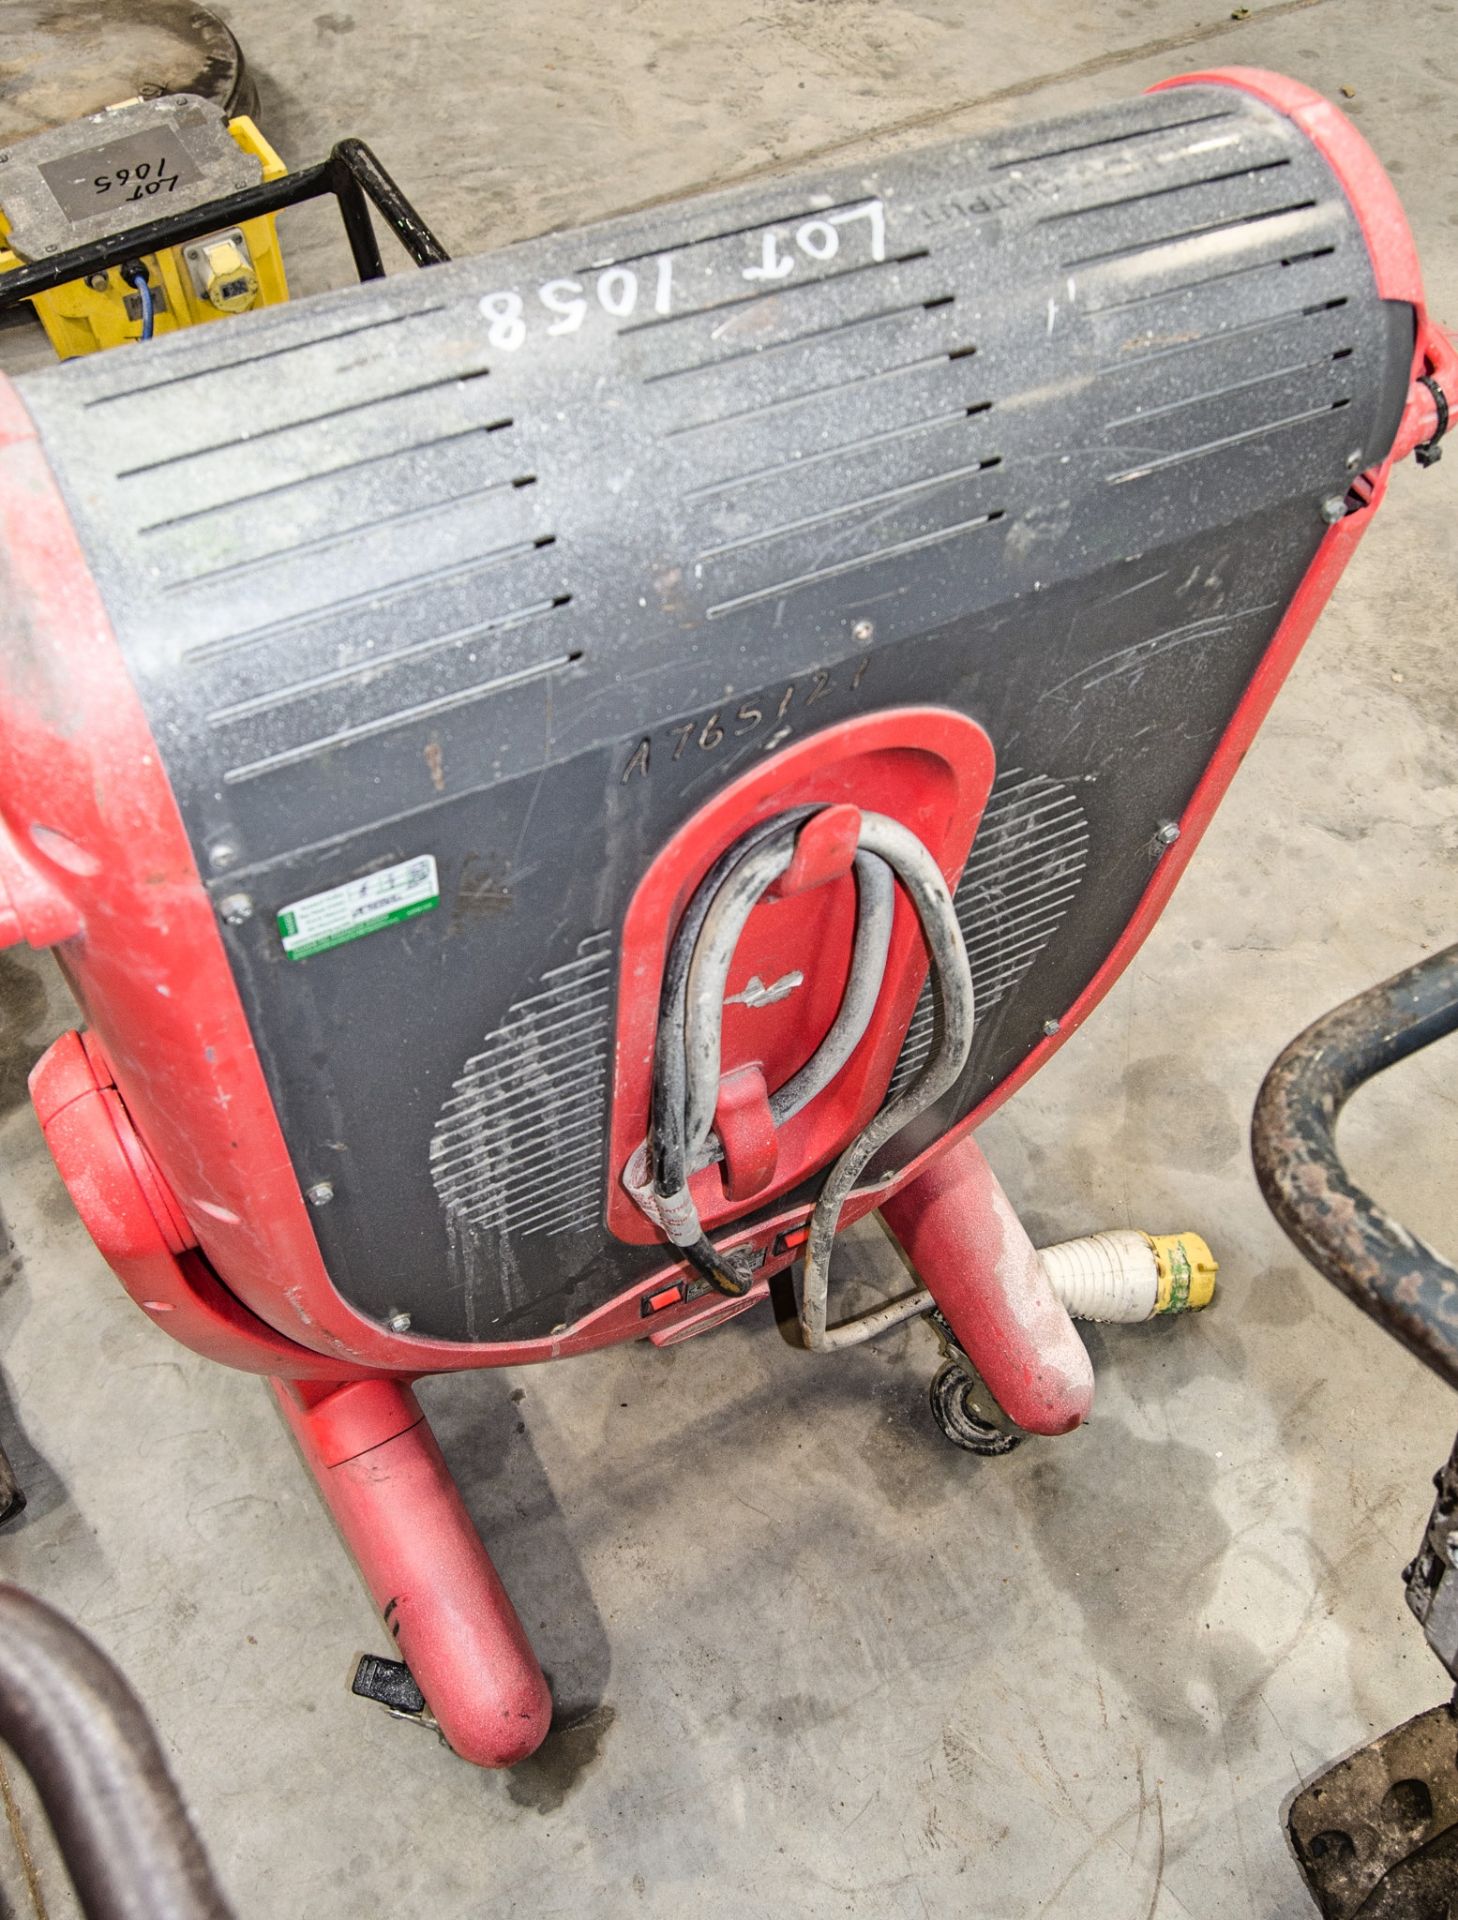 Elite 110v infra red heater A765121 ** casing damaged ** - Image 2 of 2